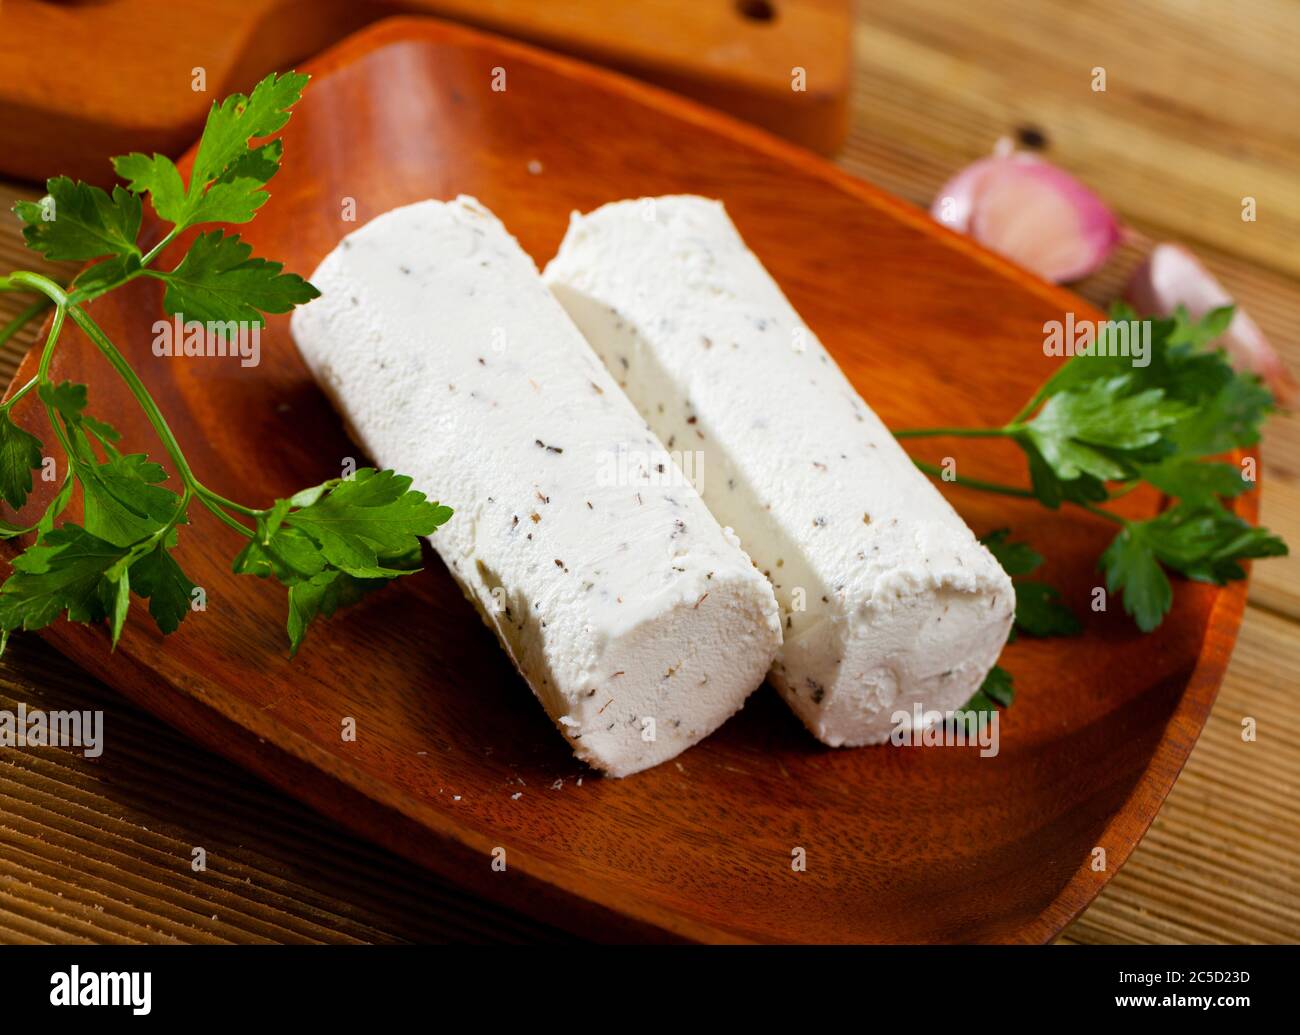 Délicat fromage de chèvre au lait salé avec herbes piqueuses et ail sur l'assiette Banque D'Images